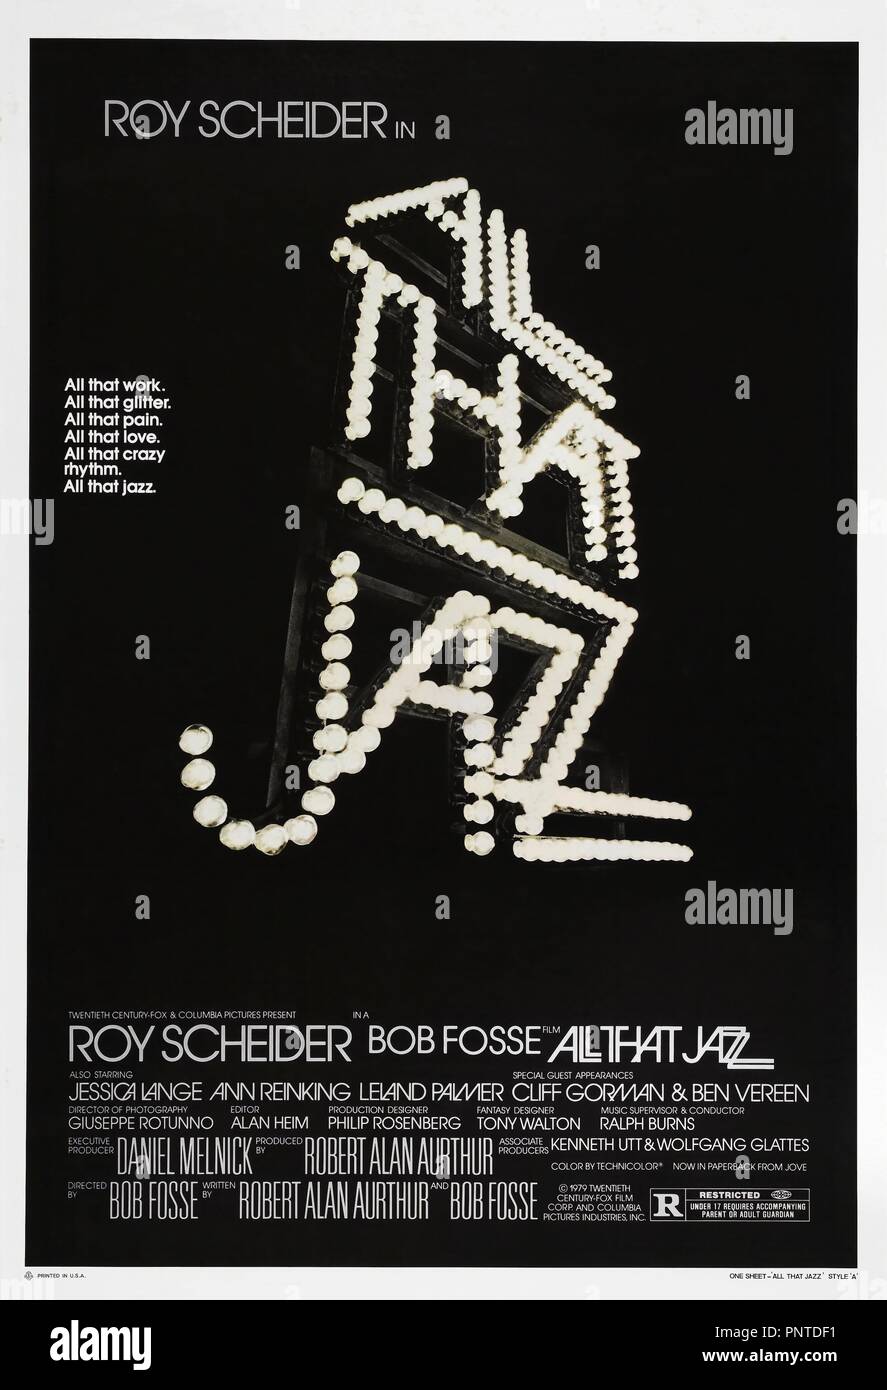 Pellicola originale titolo: tutto ciò che il jazz. Titolo inglese: tutto ciò che il jazz. Anno: 1979. Direttore: BOB FOSSE. Credito: COL/TCF / Album Foto Stock